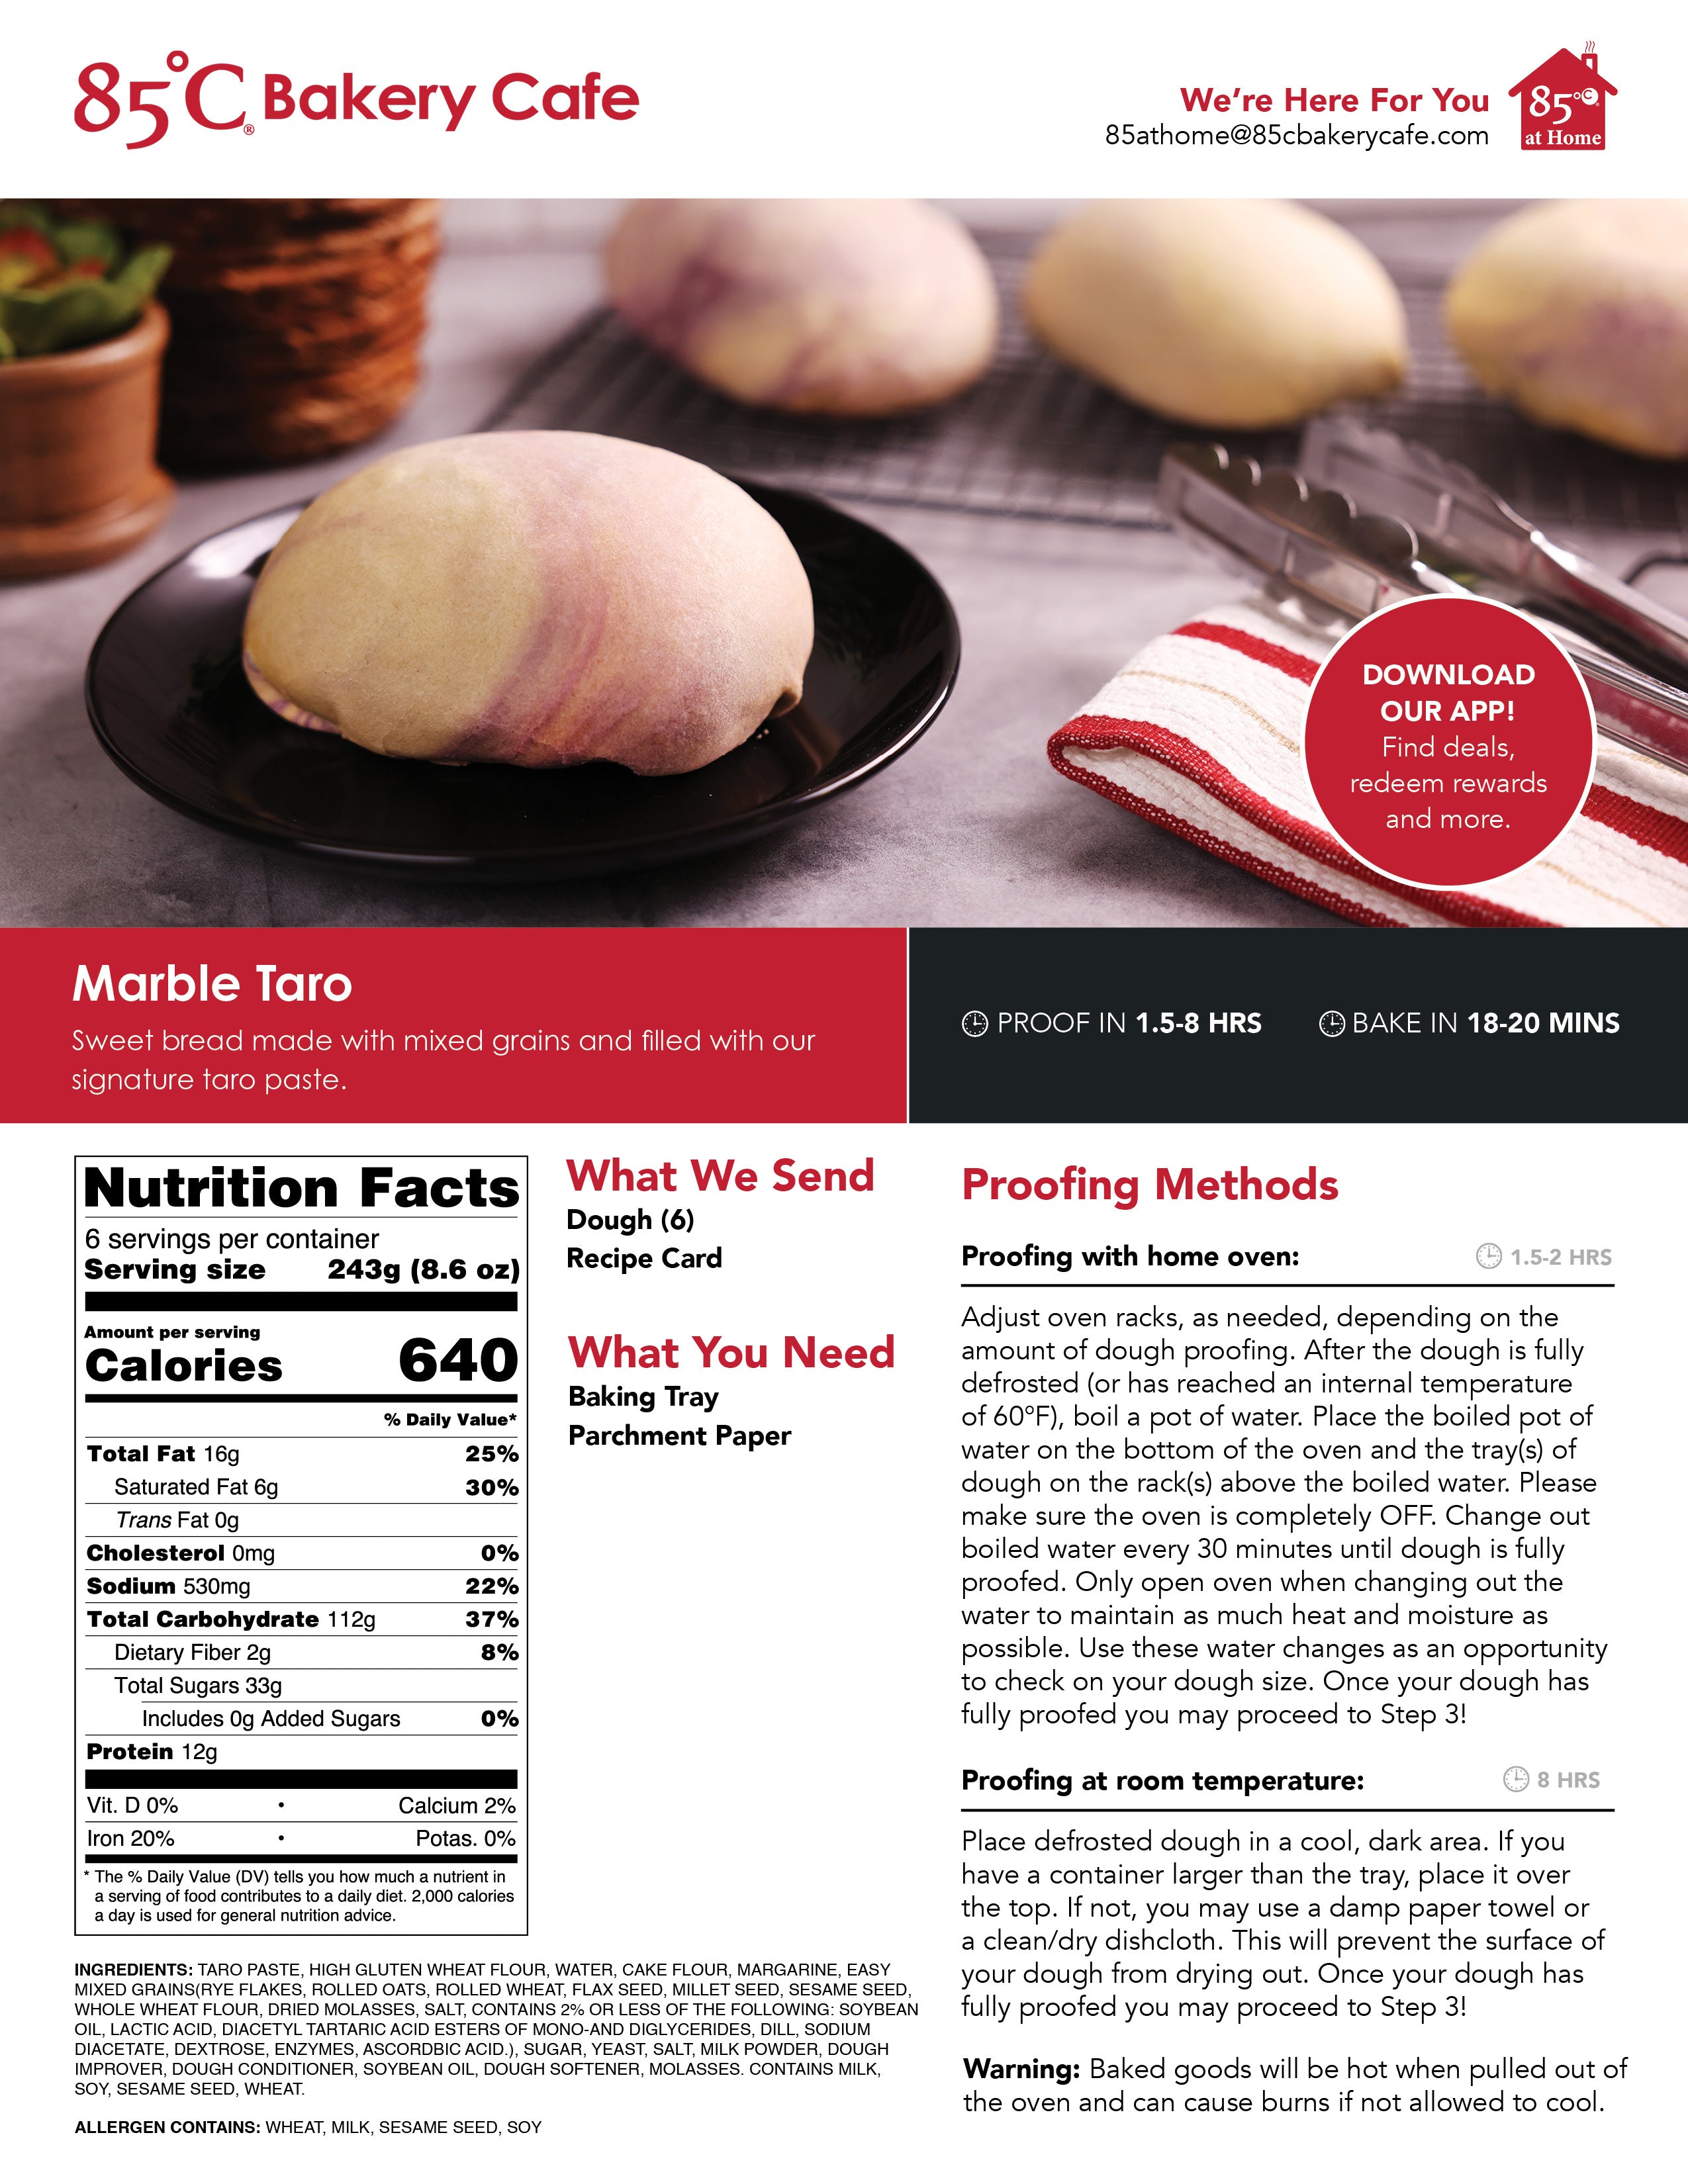 Marble Taro Baking Guide Image